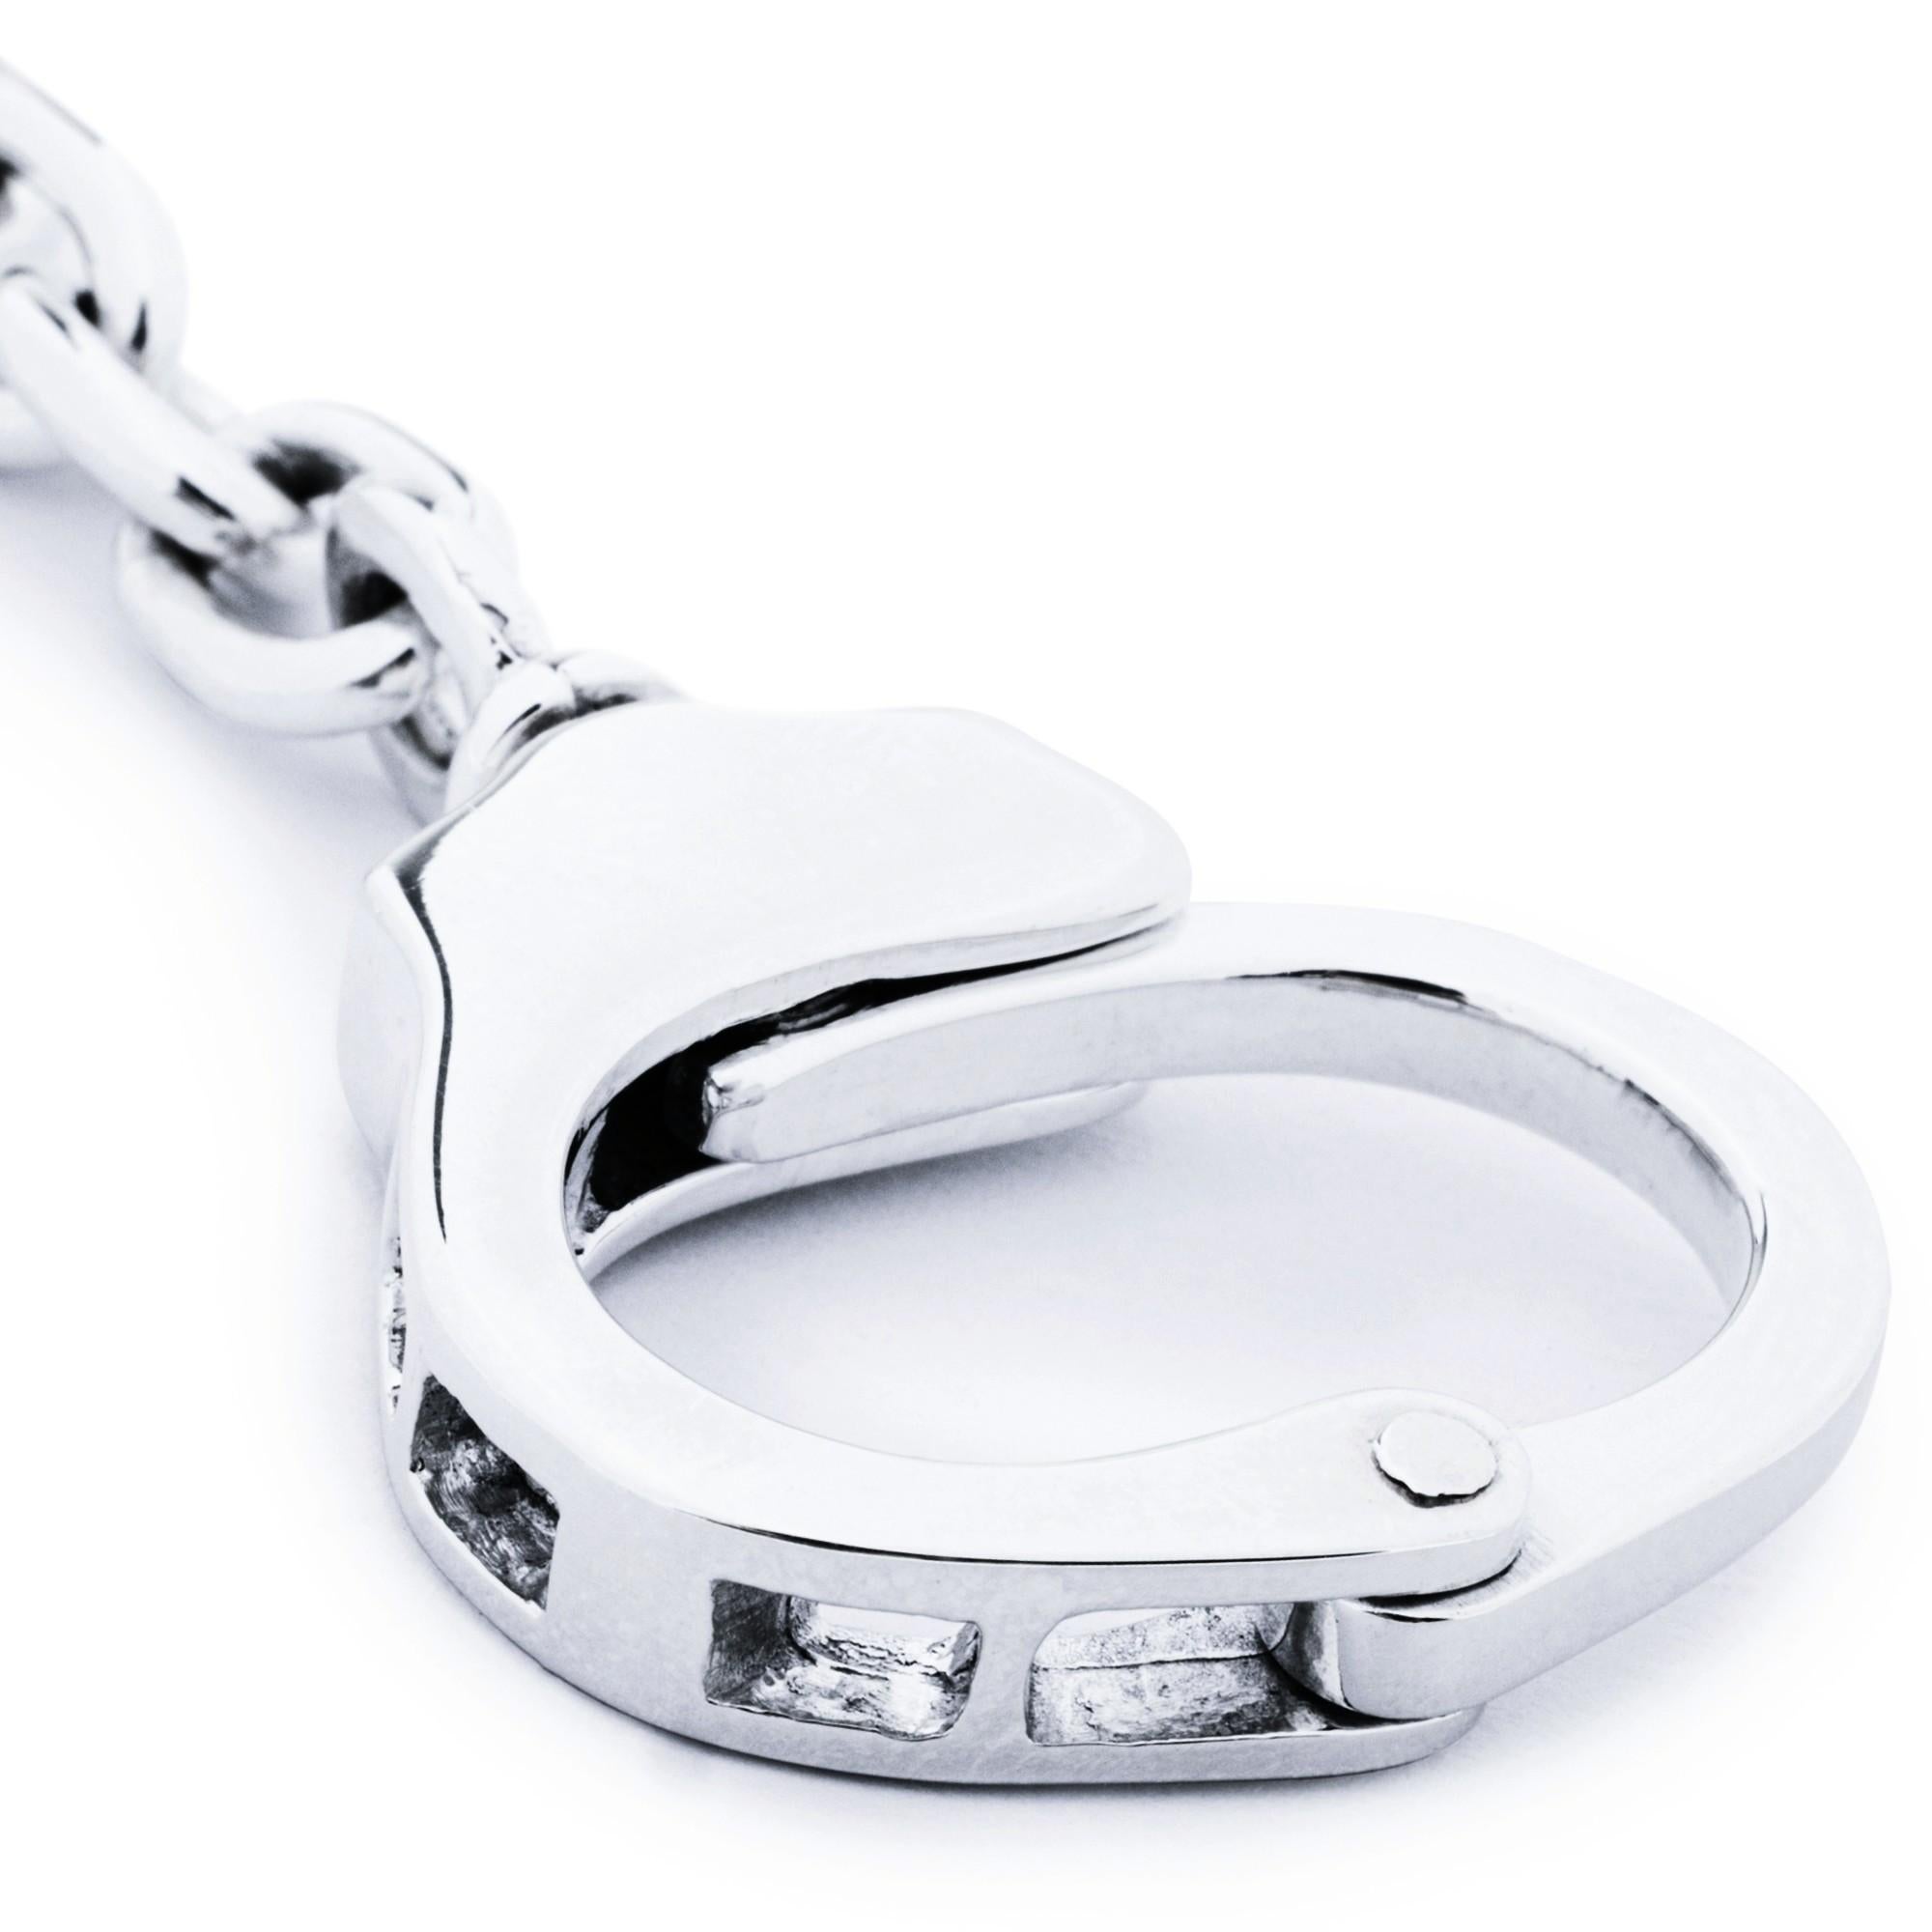 Alex Jona Design Kollektion, handgefertigt in Italien, Sterling Silber Handschellen Schlüsselhalter.
Die Geschenke von Alex Jona zeichnen sich nicht nur durch ihr besonderes Design und ihre hervorragende Qualität aus, sondern auch durch die